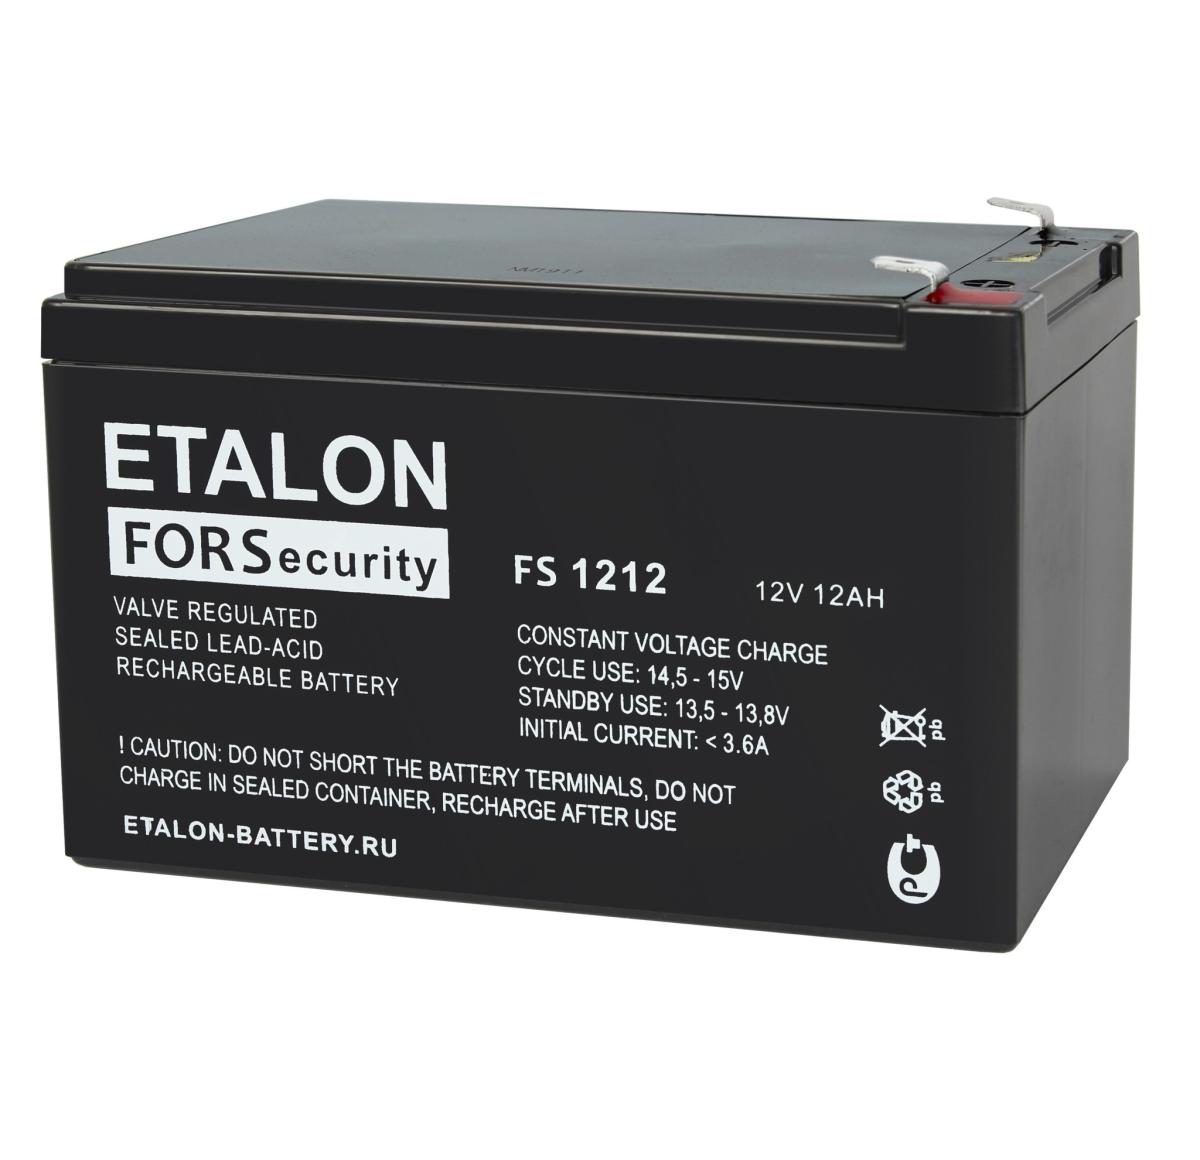  ETALON FORS 1212 Аккумулятор герметичный свинцово-кислотный